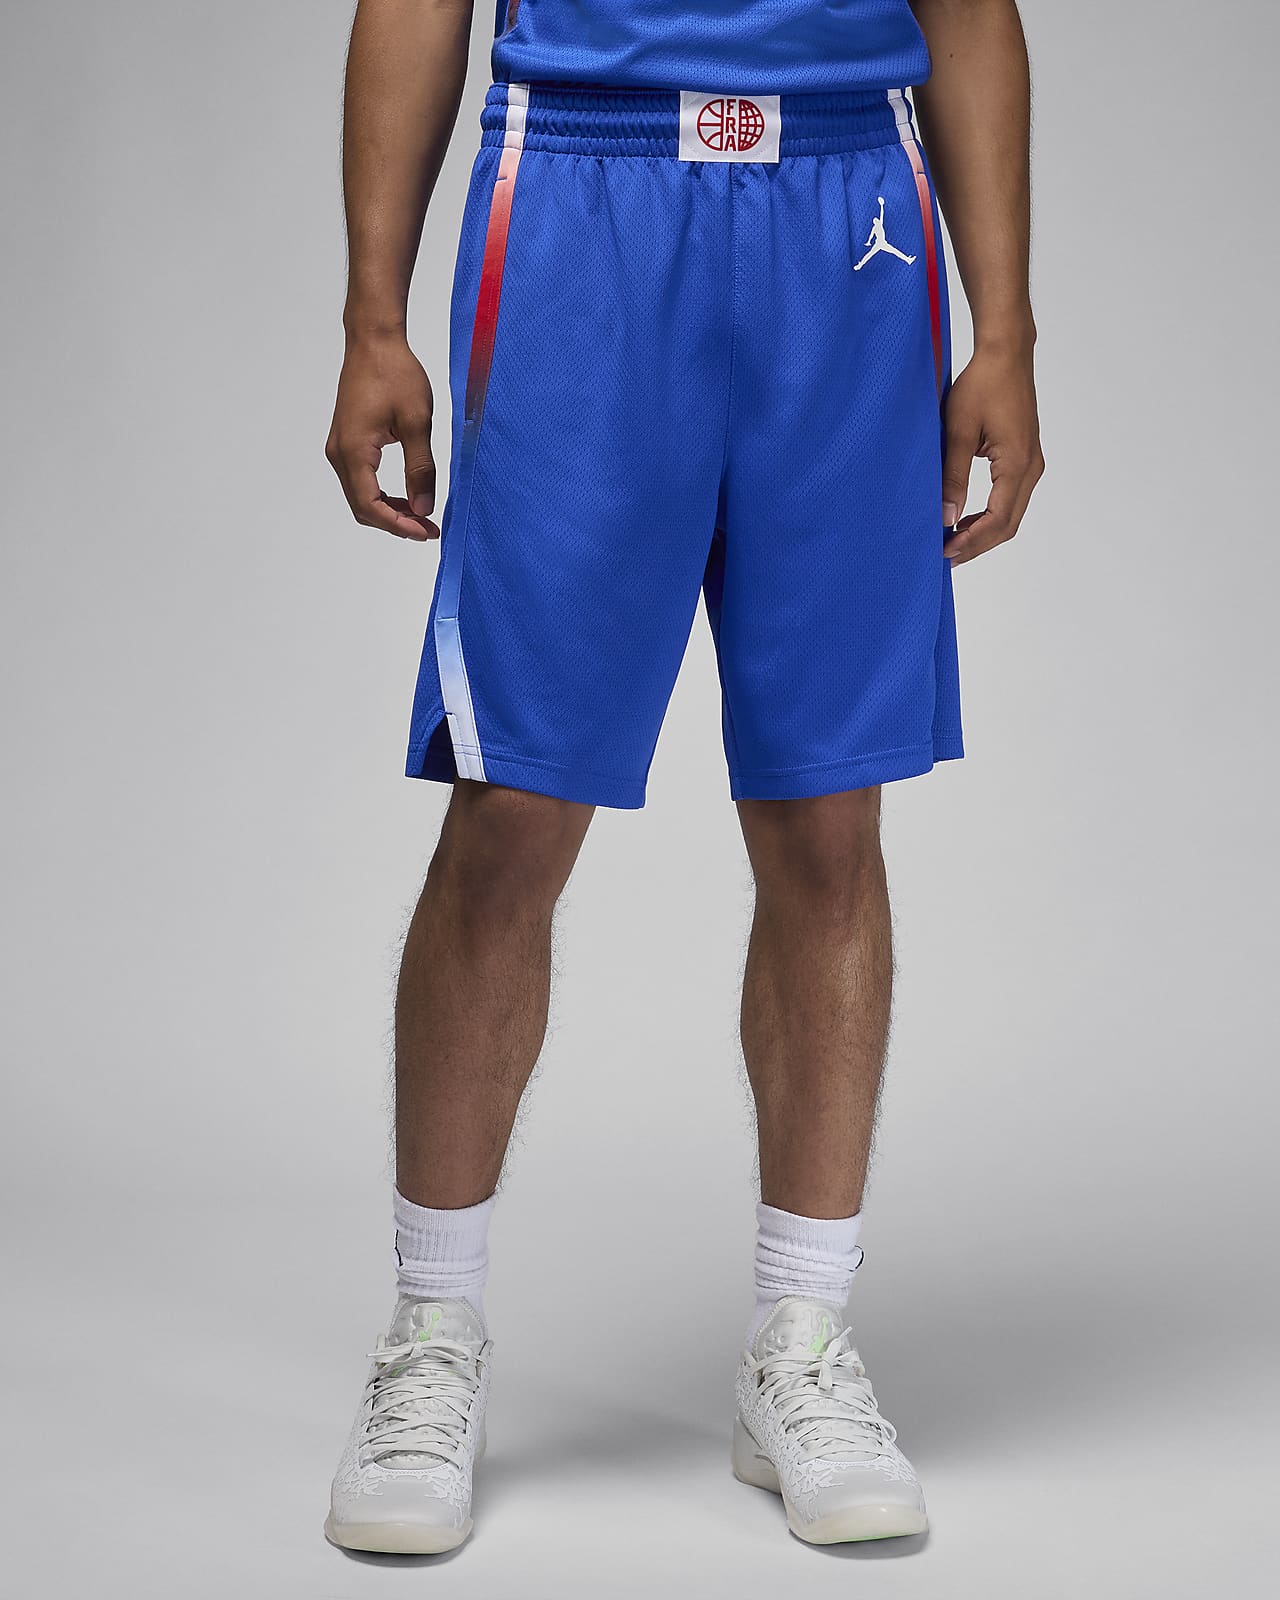 Primera equipación Limited Francia Pantalón corto de baloncesto Nike - Hombre